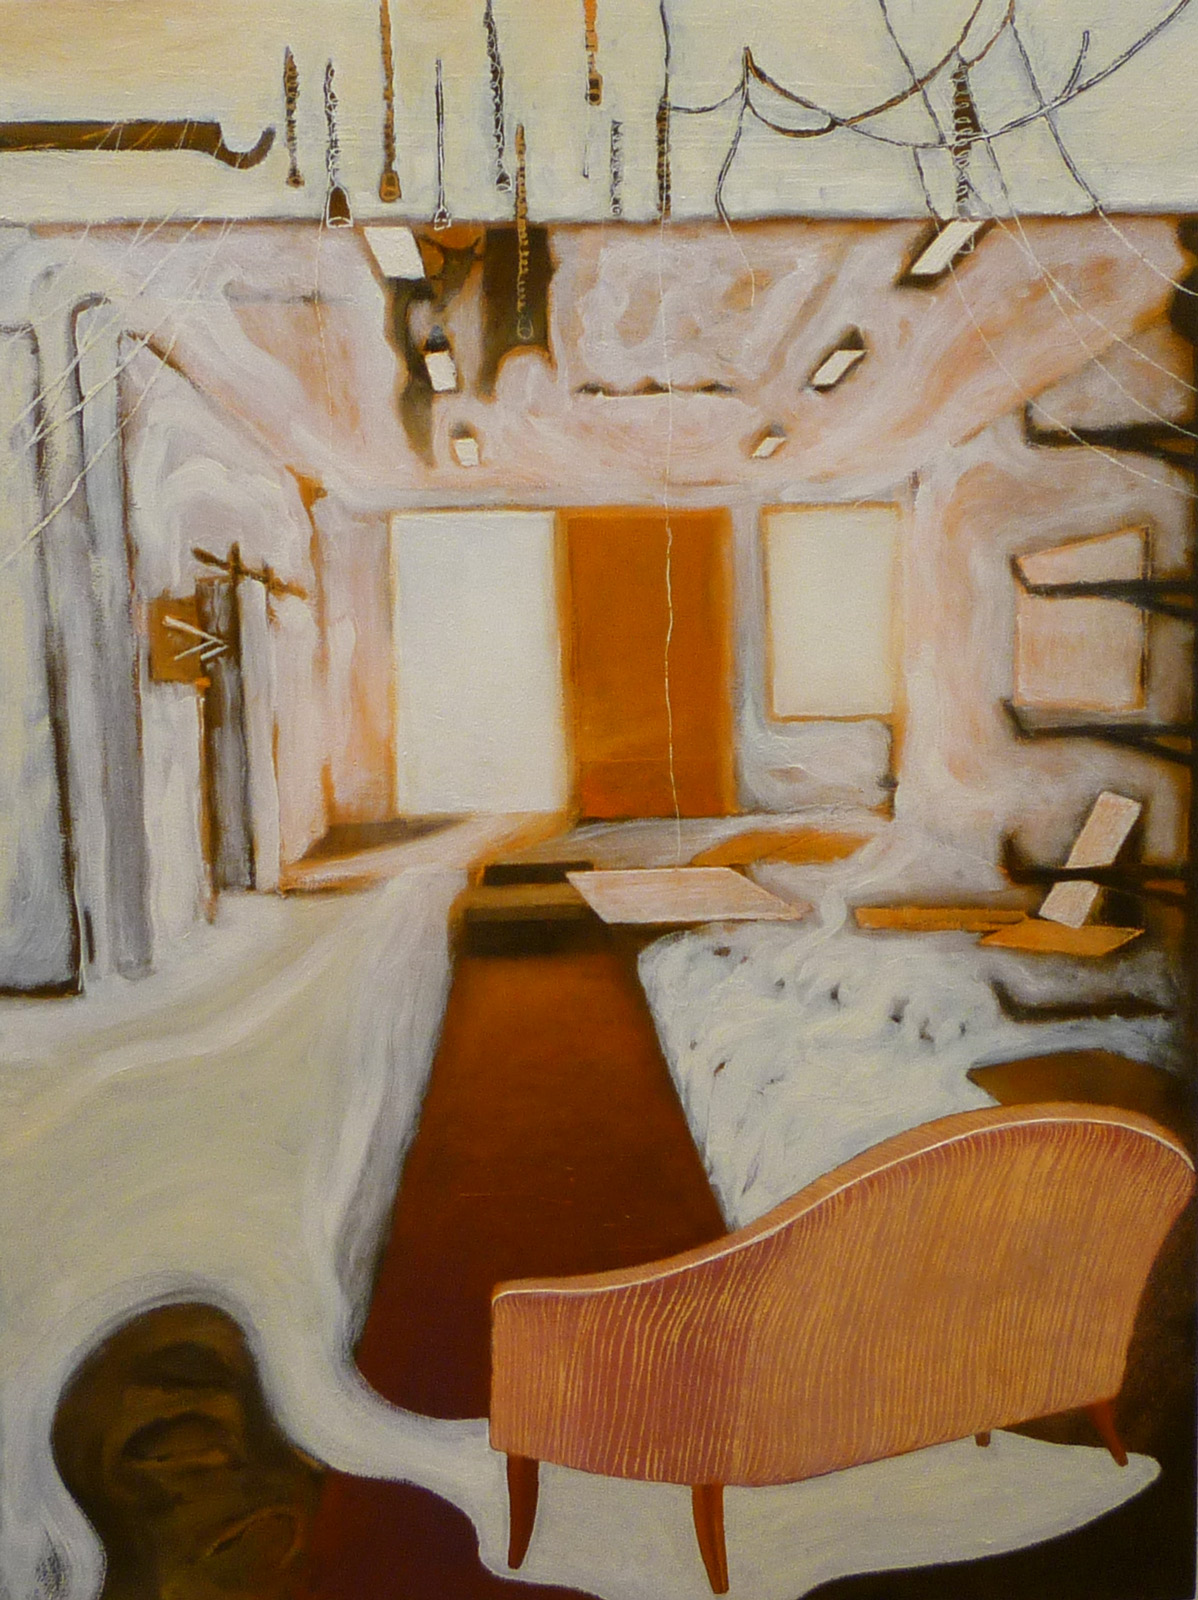 Lisa D Manner, "Setting", 2015, oil on panel, 40 x 30 cm